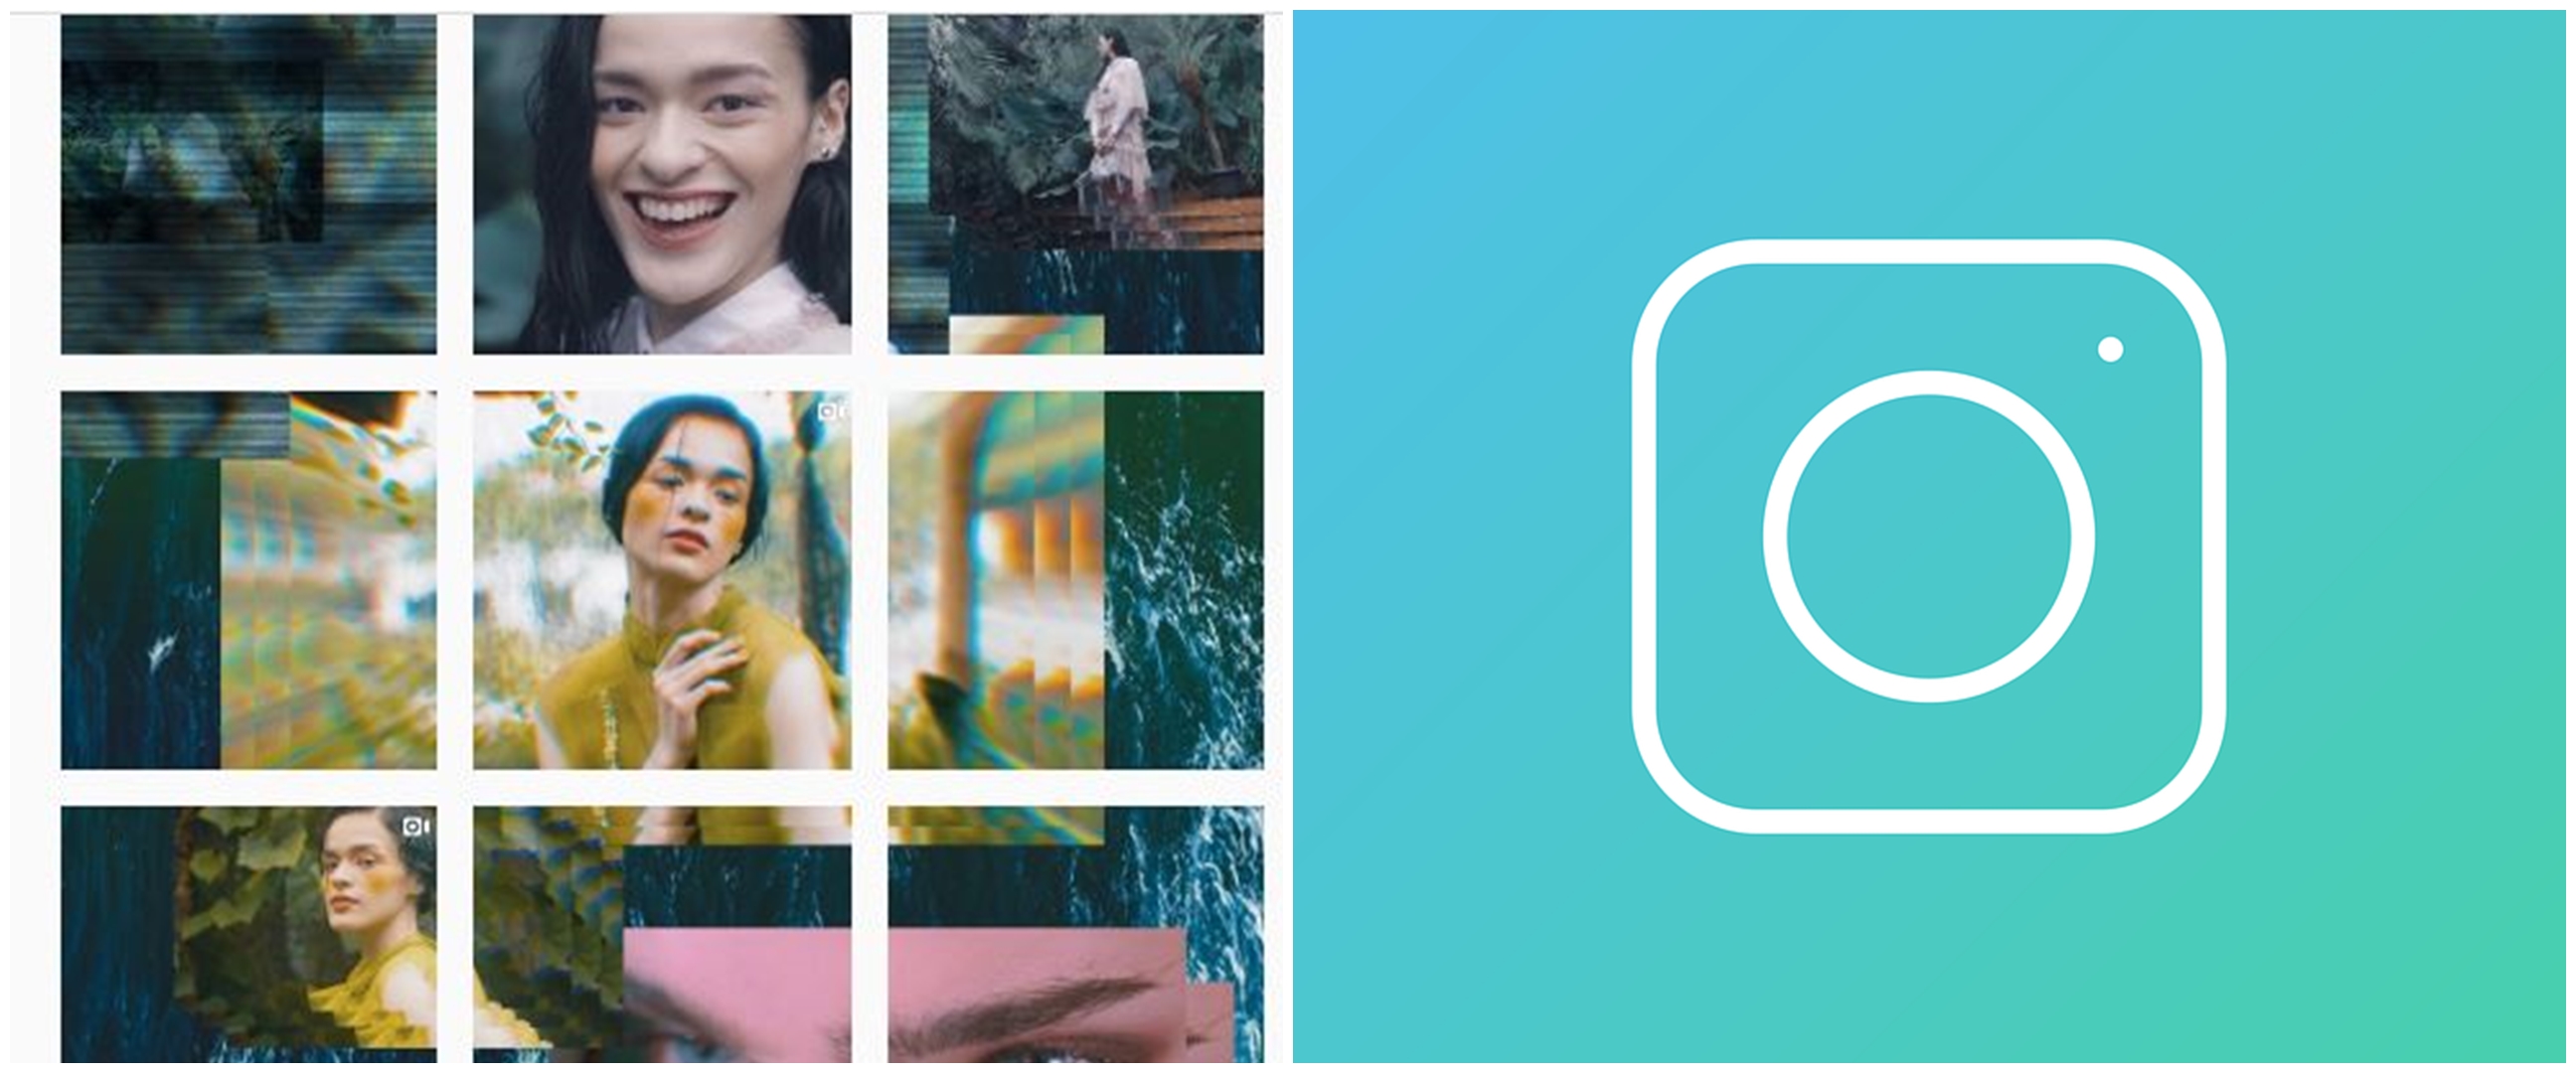 6 Cara membuat konten Instagram (IG) menarik & tetap konsisten